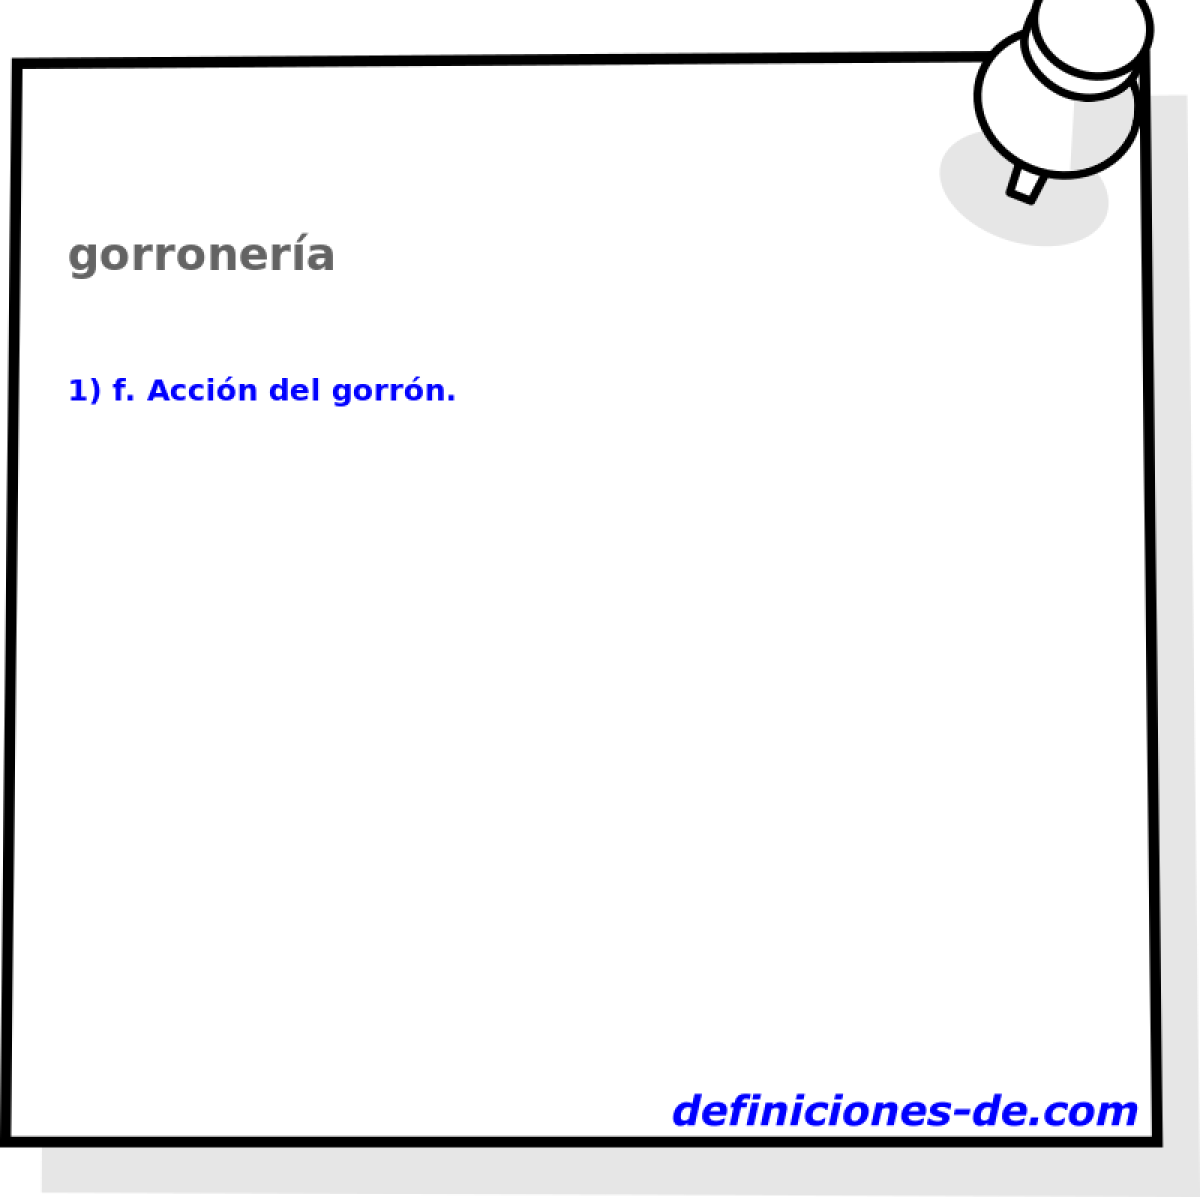 gorronera 